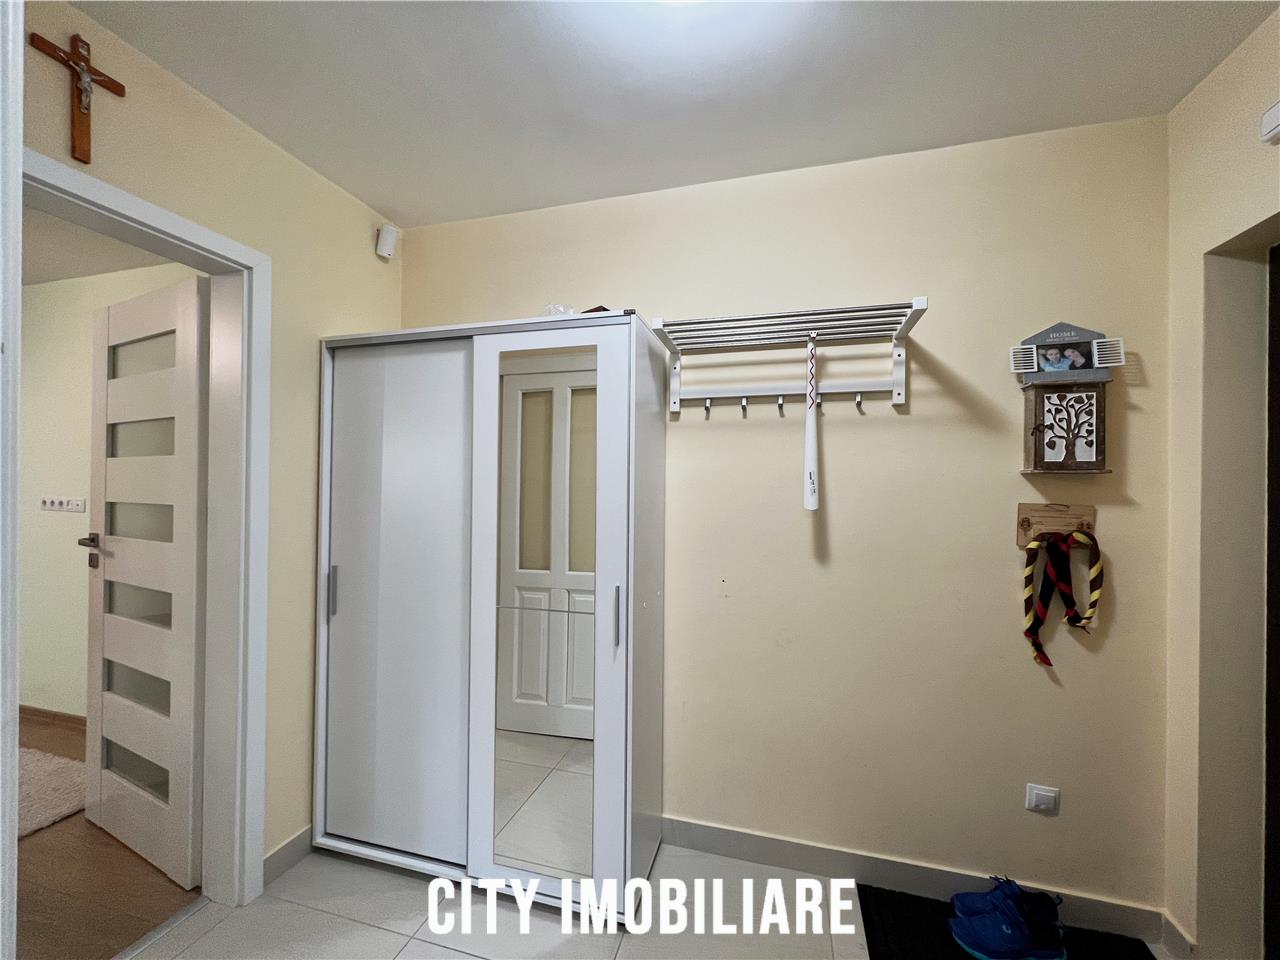 Apartament 3 camere, S62 mp +balcon, Primaverii.